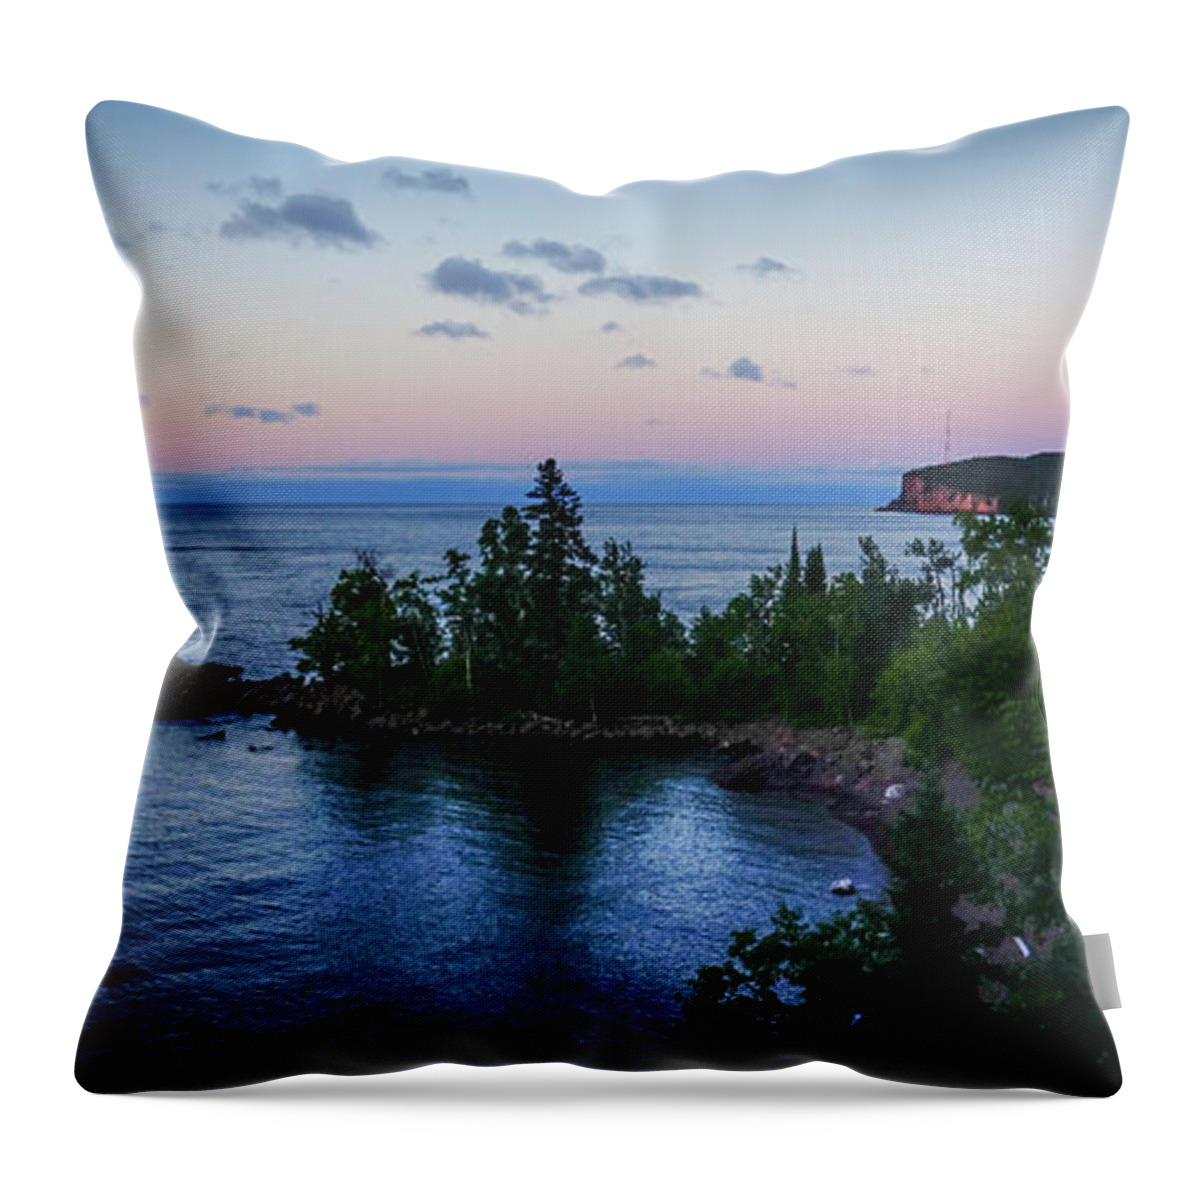 Sunset Throw Pillow featuring the photograph Tettegouche Sunset by Hermes Fine Art